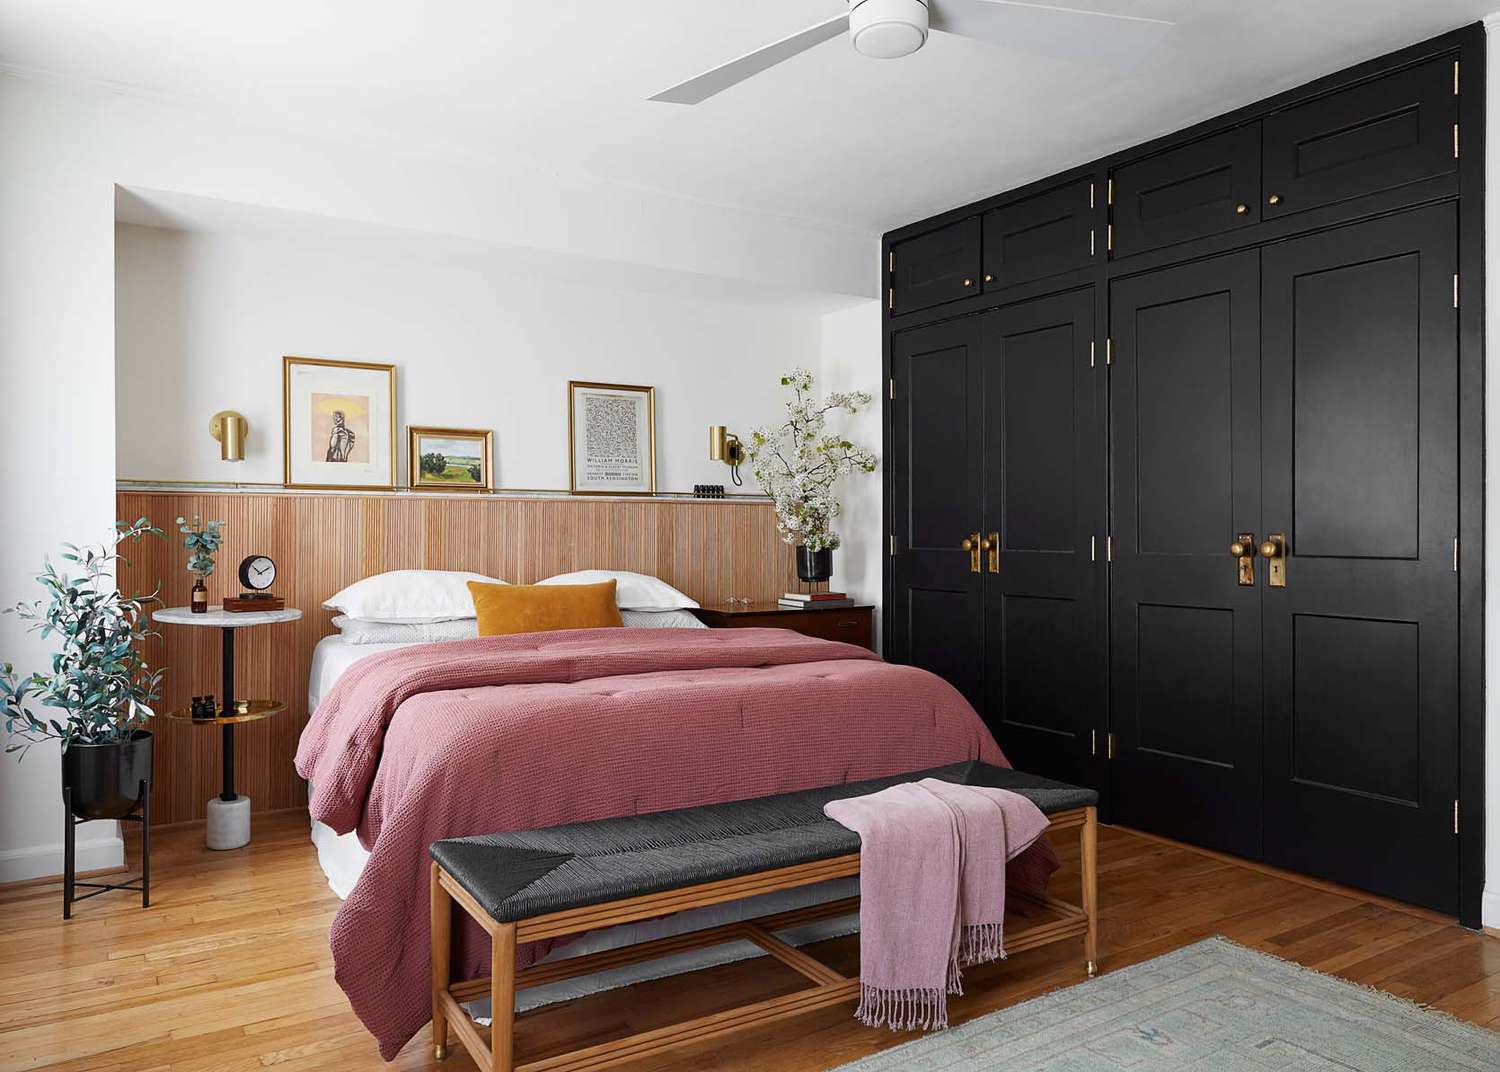 Uma cama cor de pêssego fica ao lado de uma parede preta de destaque